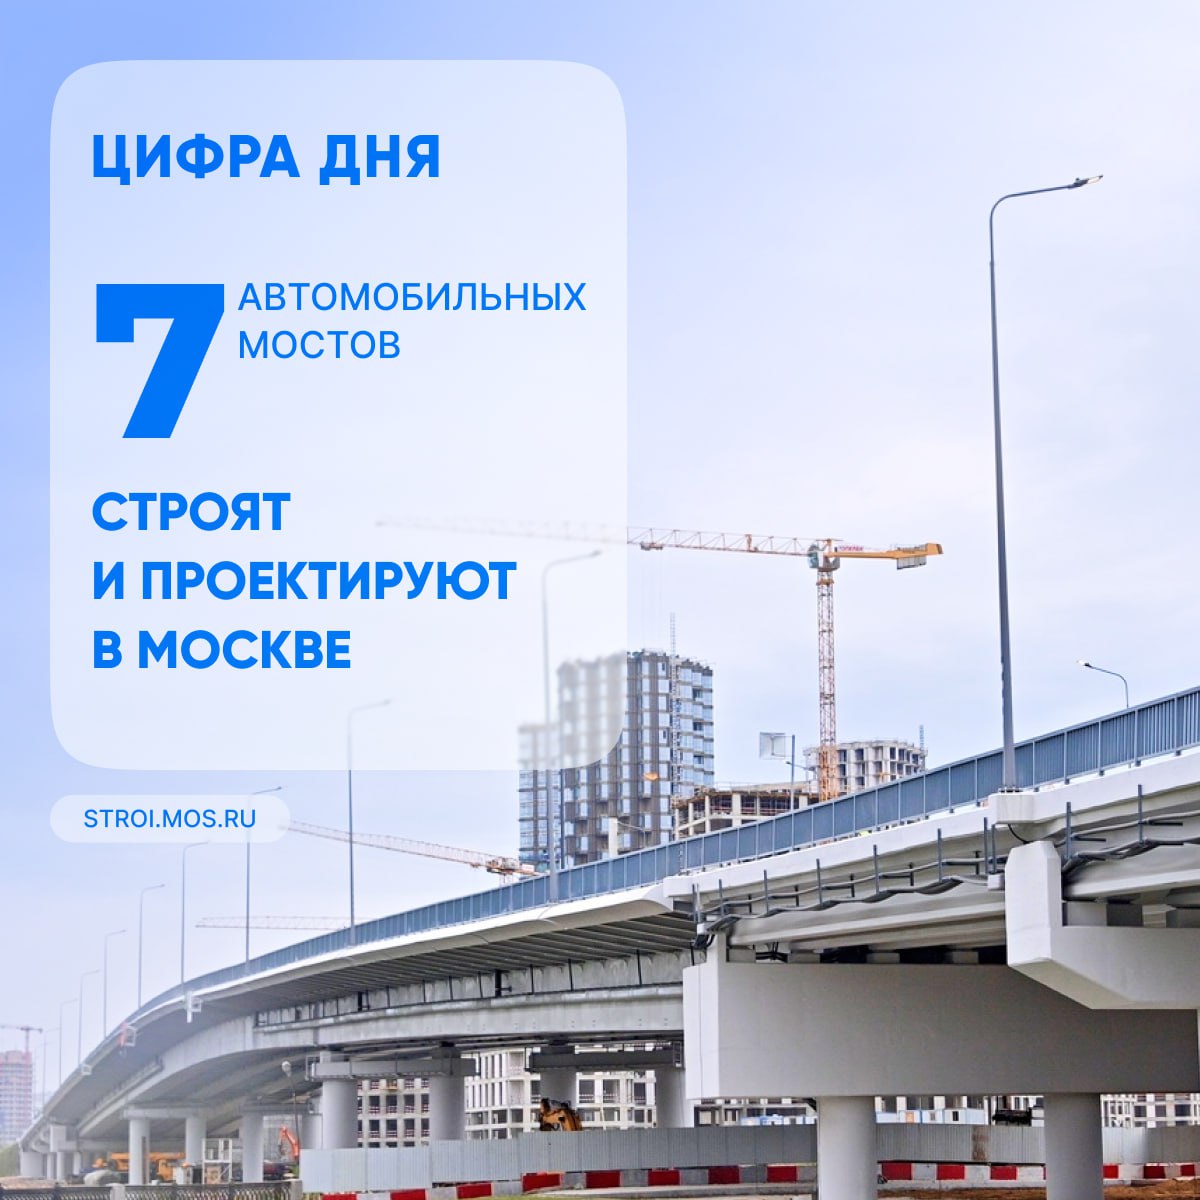 Всего с 2011 года в столице возвели 31 автомобильный мост.